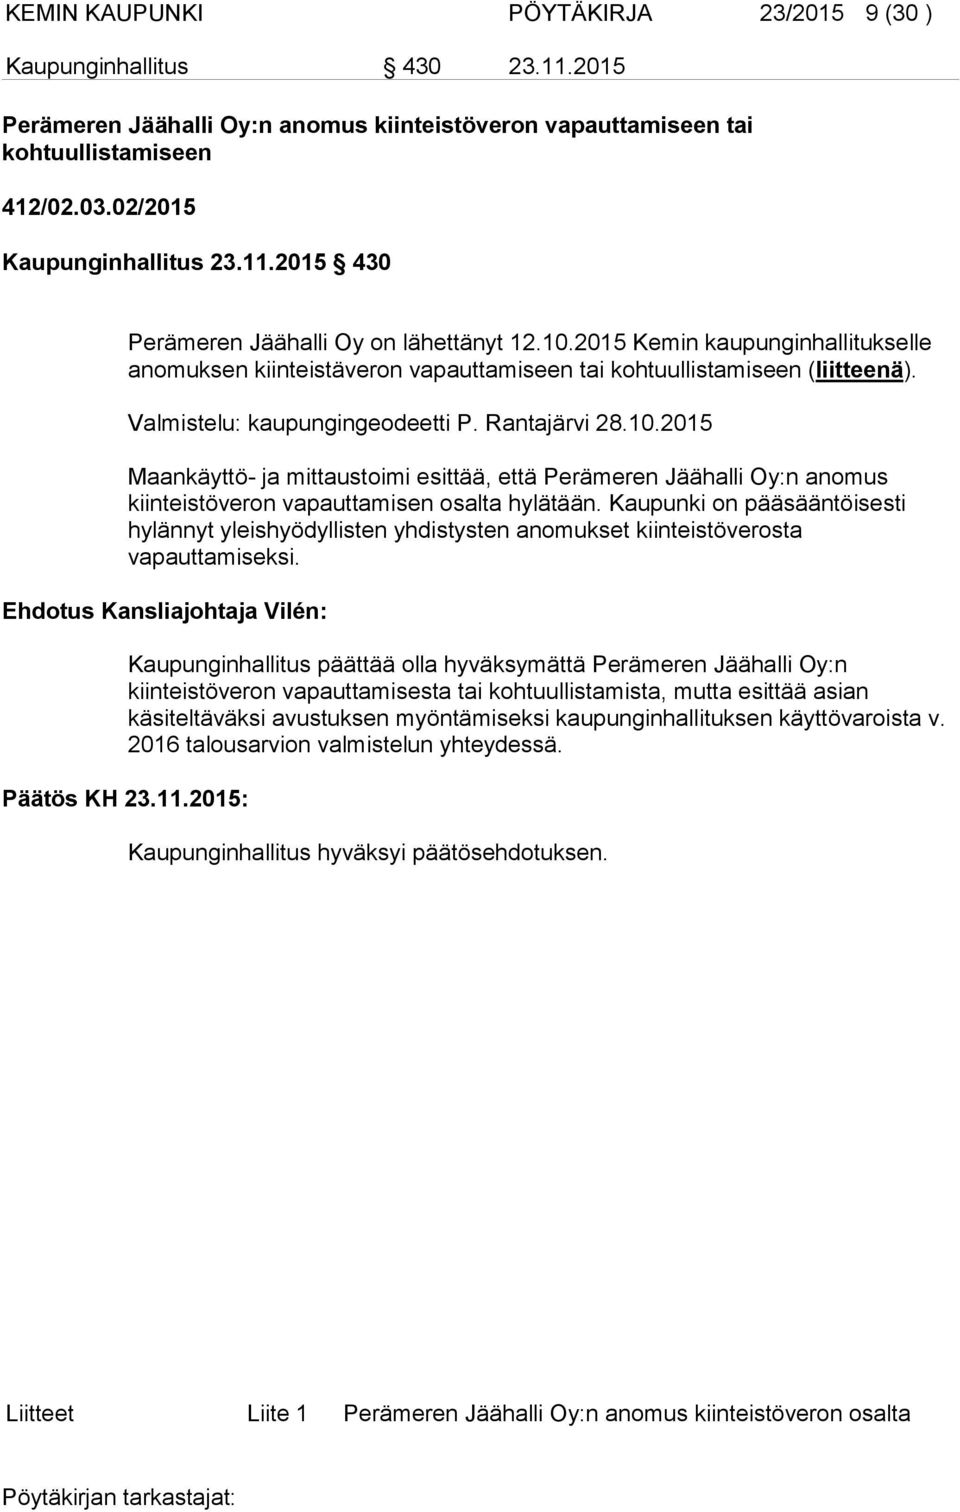 Rantajärvi 28.10.2015 Maankäyttö- ja mittaustoimi esittää, että Perämeren Jäähalli Oy:n anomus kiinteistöveron vapauttamisen osalta hylätään.